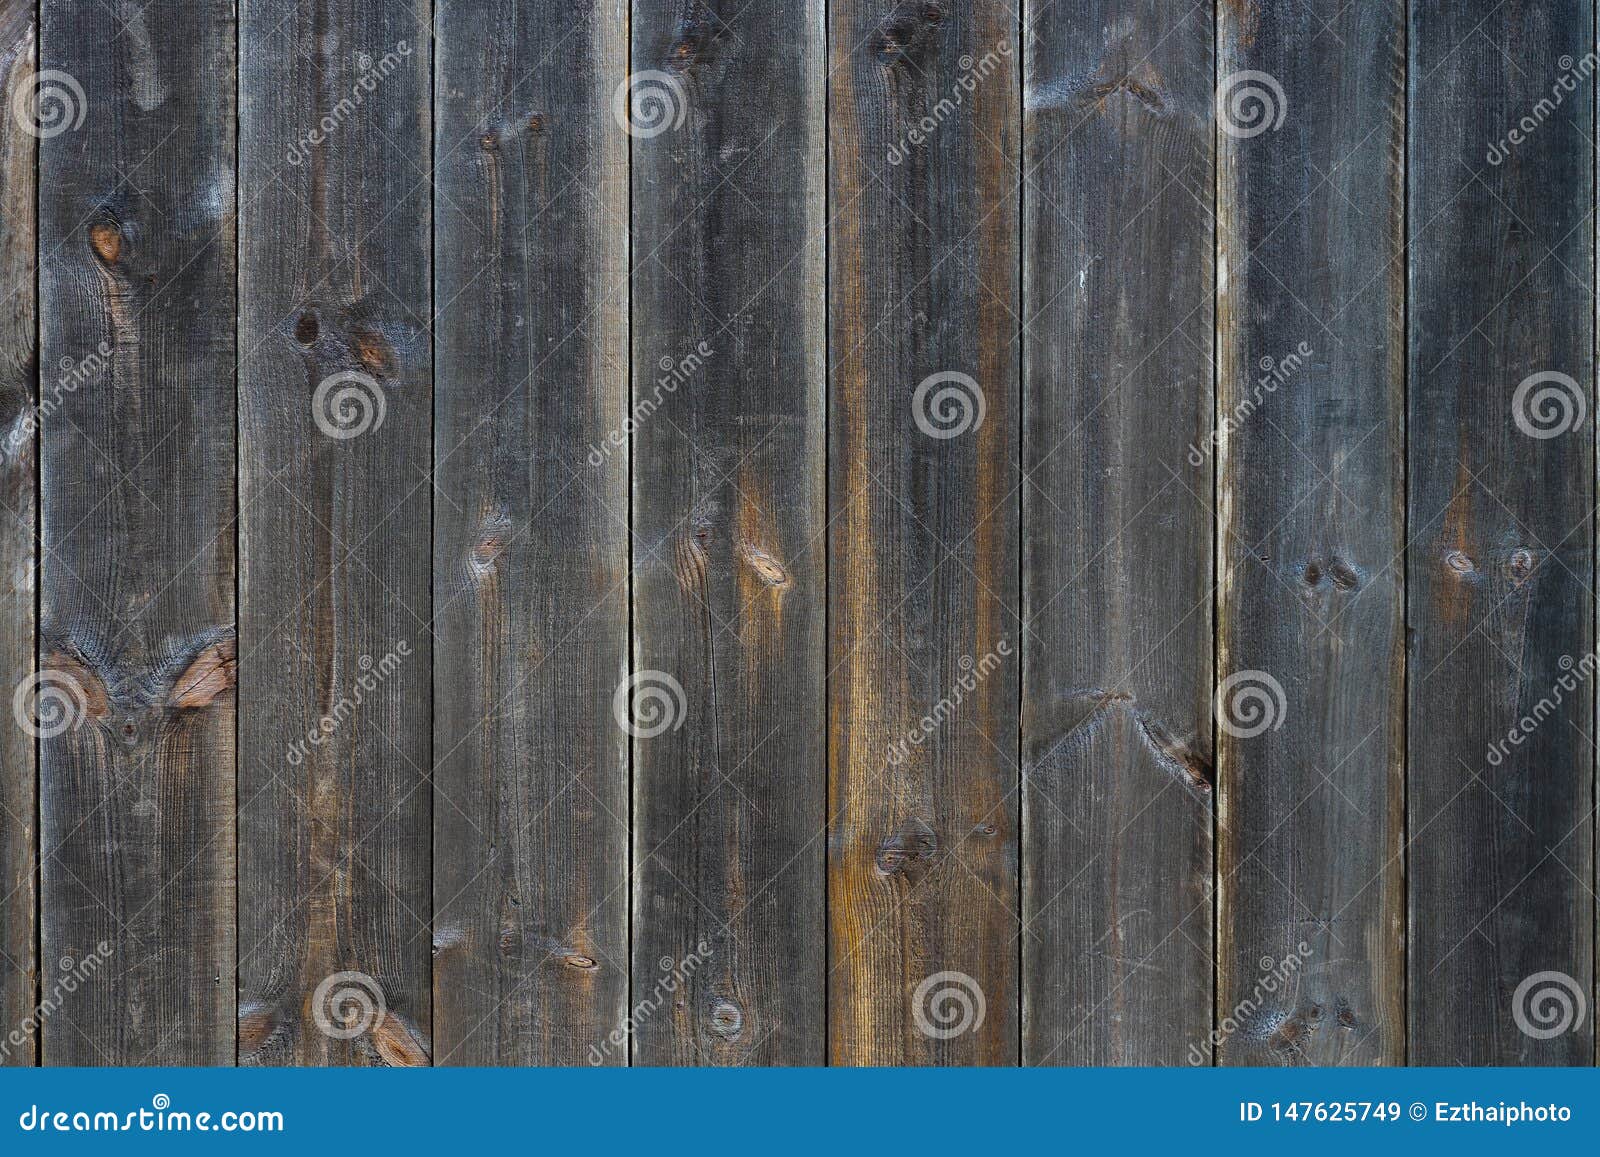 grunge dark wooden texture background, wood planks. background old panels